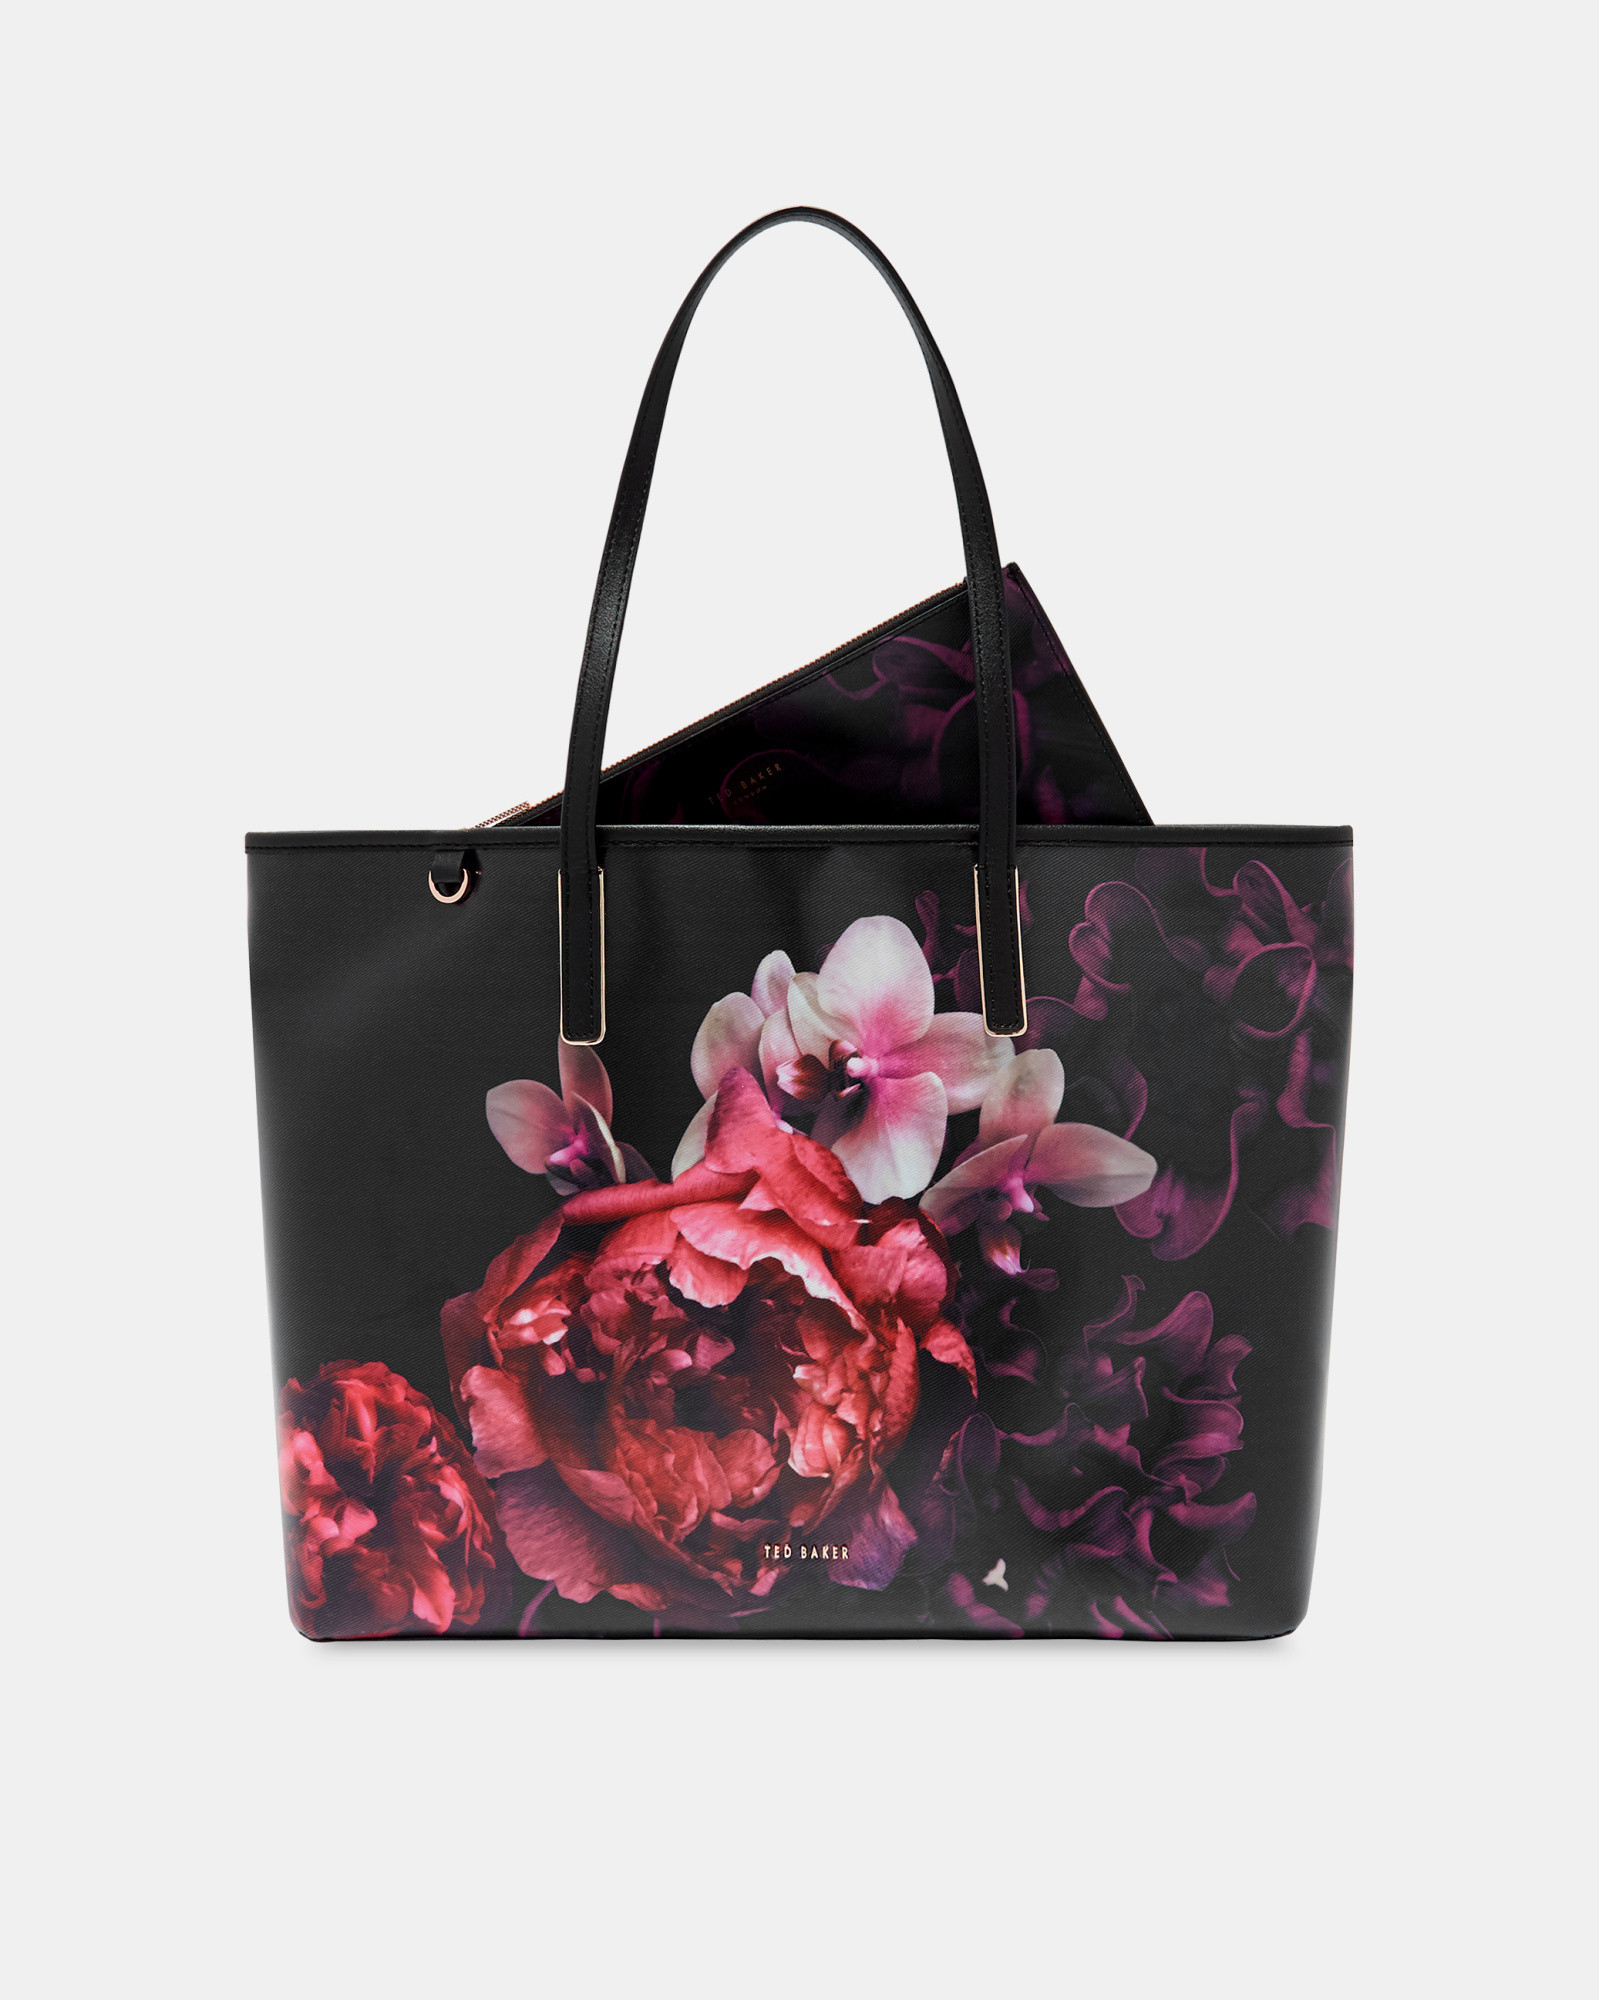 SUSSAN Splendour shopper bag